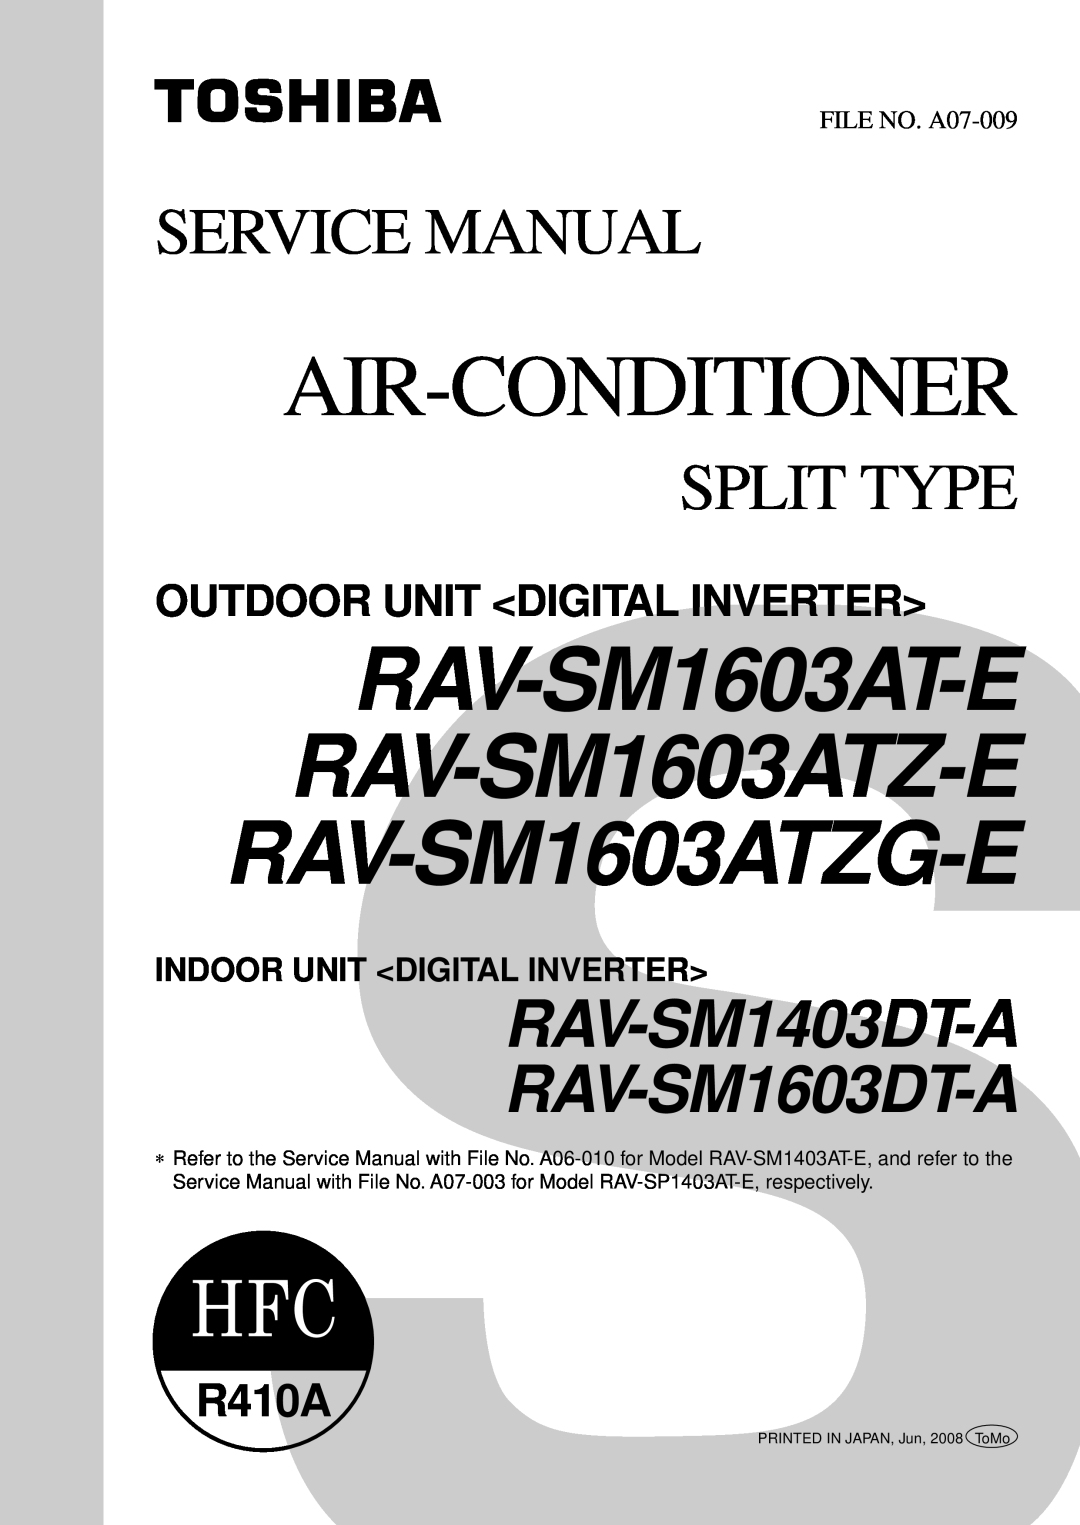 Toshiba RAV-SM1603ATZG-E service manual Outdoor Unit <Digital Inverter>, Indoor Unit <Digital Inverter>, FILE NO. A07-009 